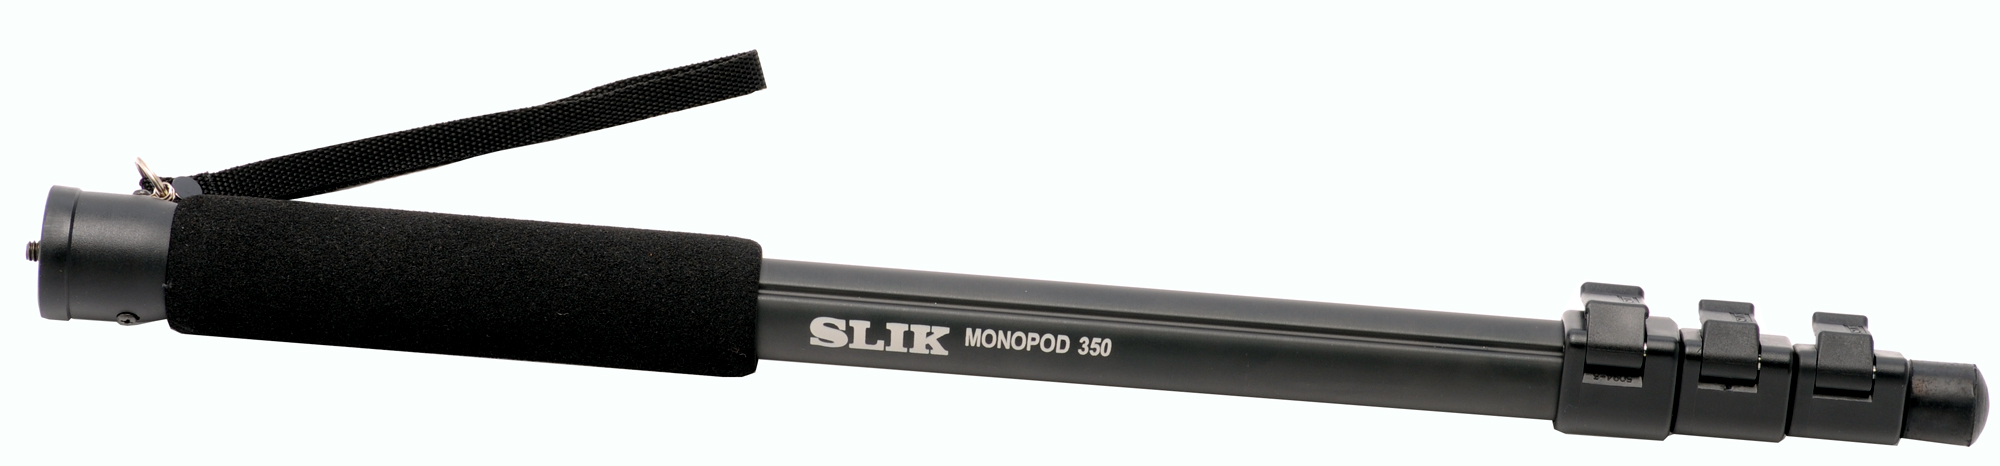 モノポッド 350 - スリック株式会社